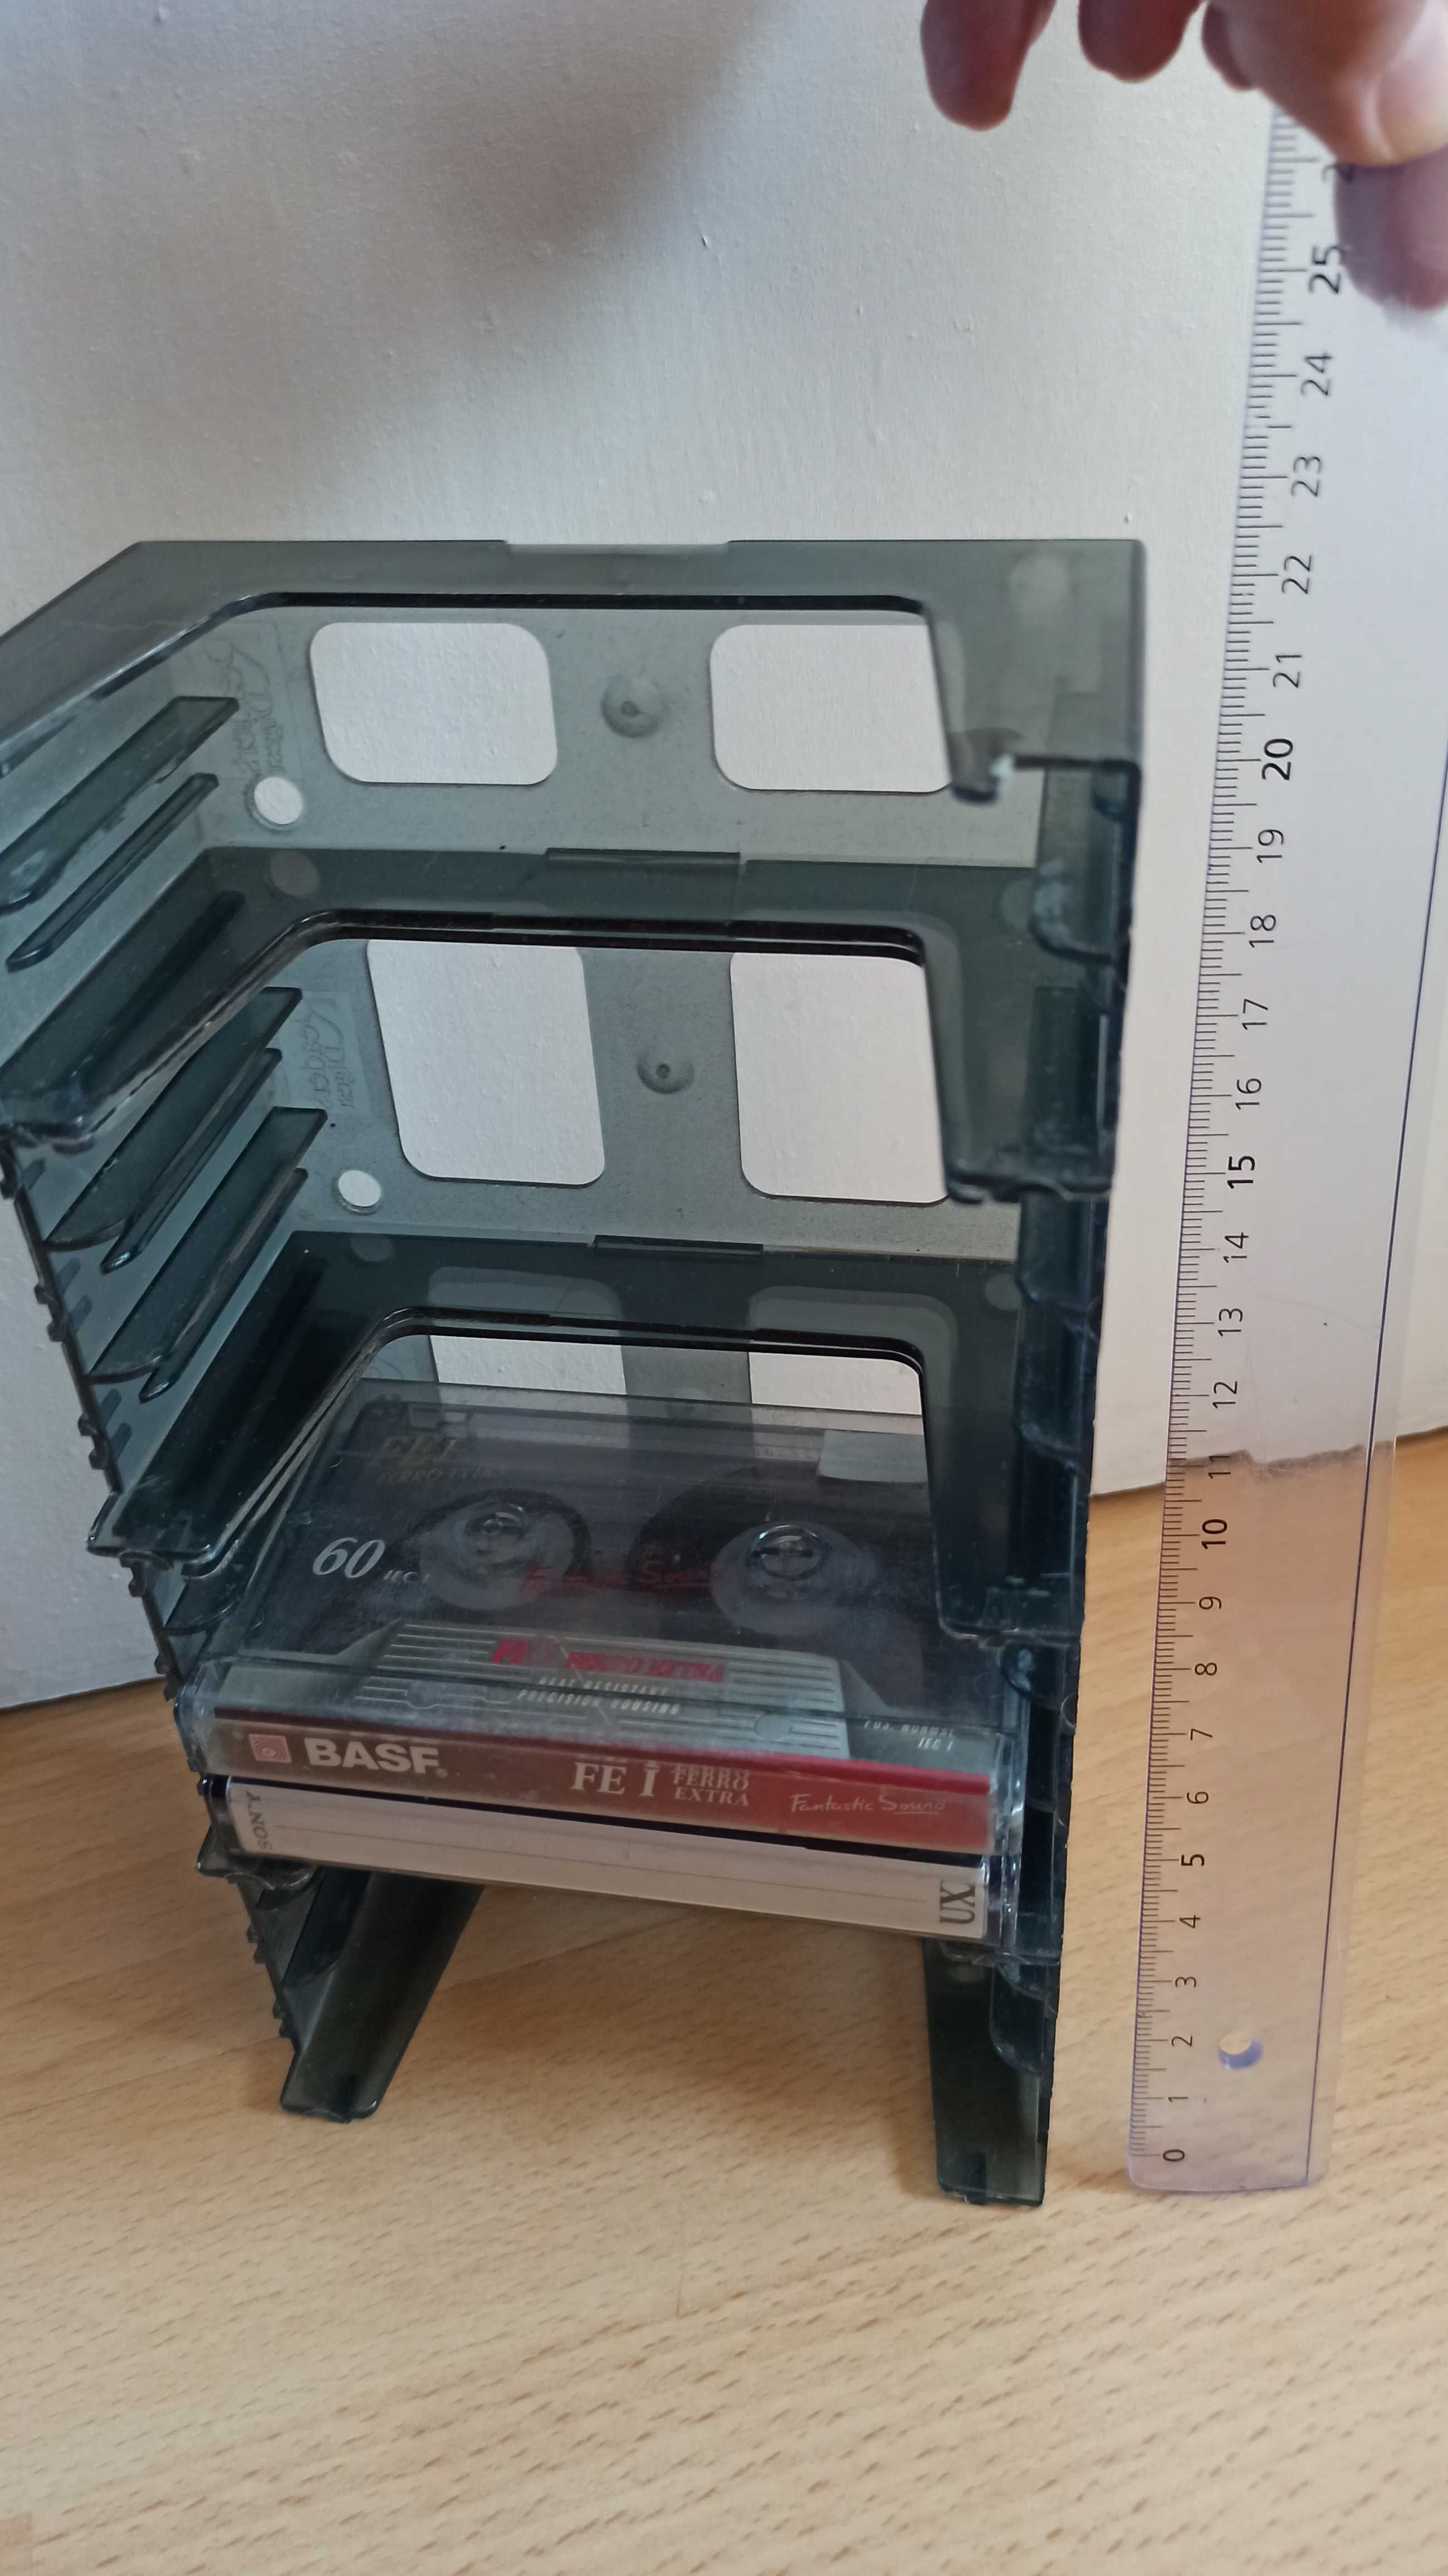 Stojak na 11 kaset magnetofonowych, można powiesić za uchwyty